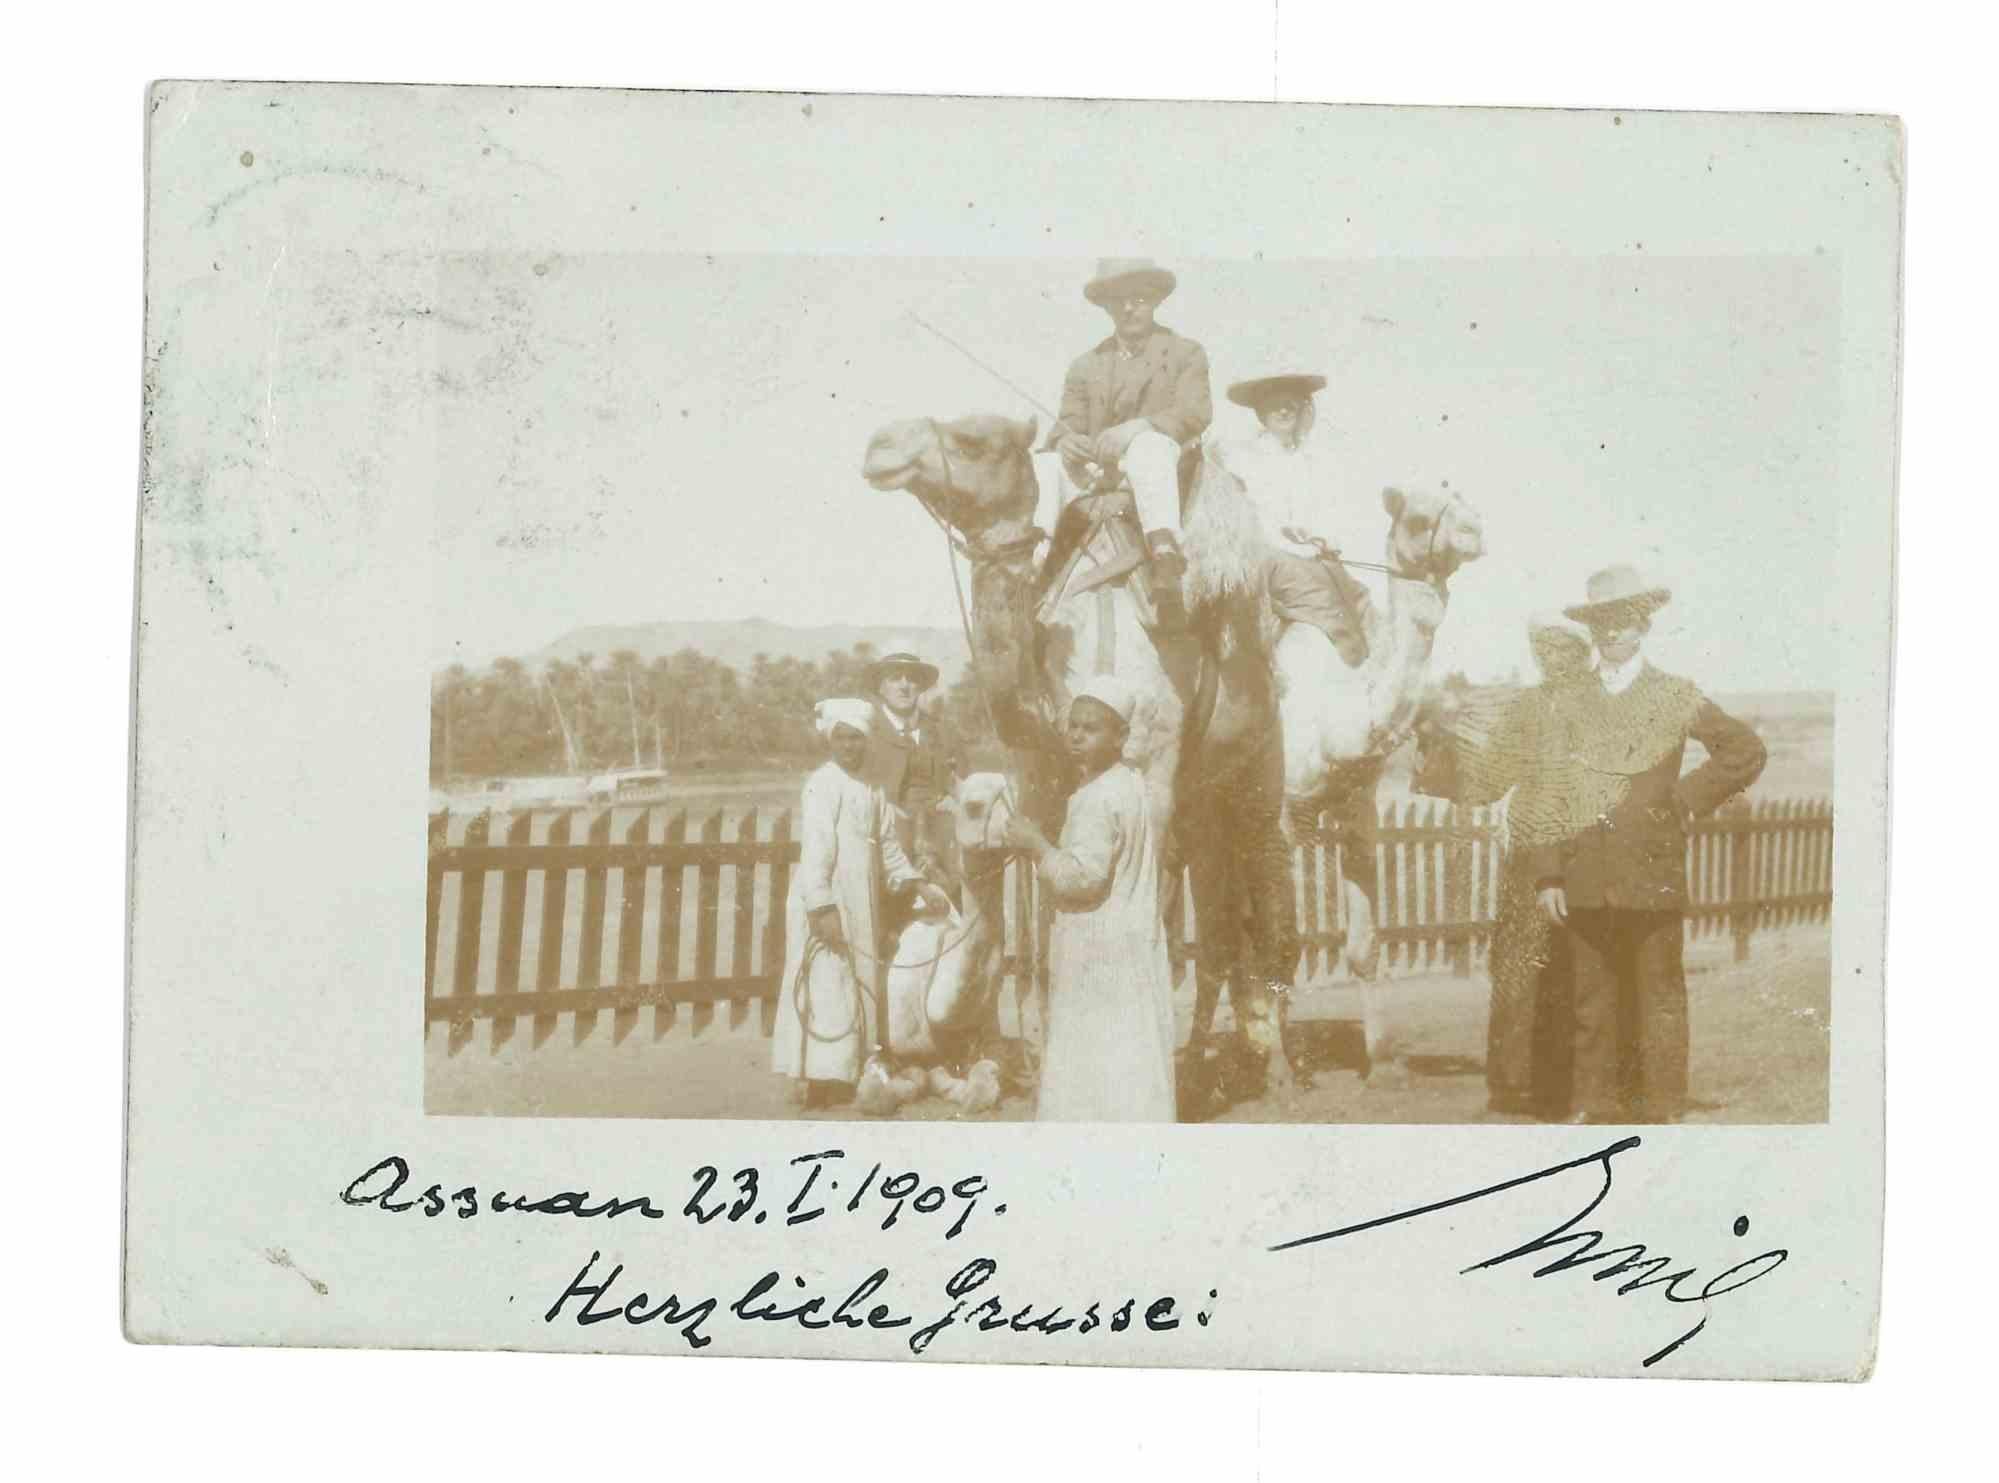 Assuan - Herzliche Grusse in 1909 - Vintage Photograph - 1909